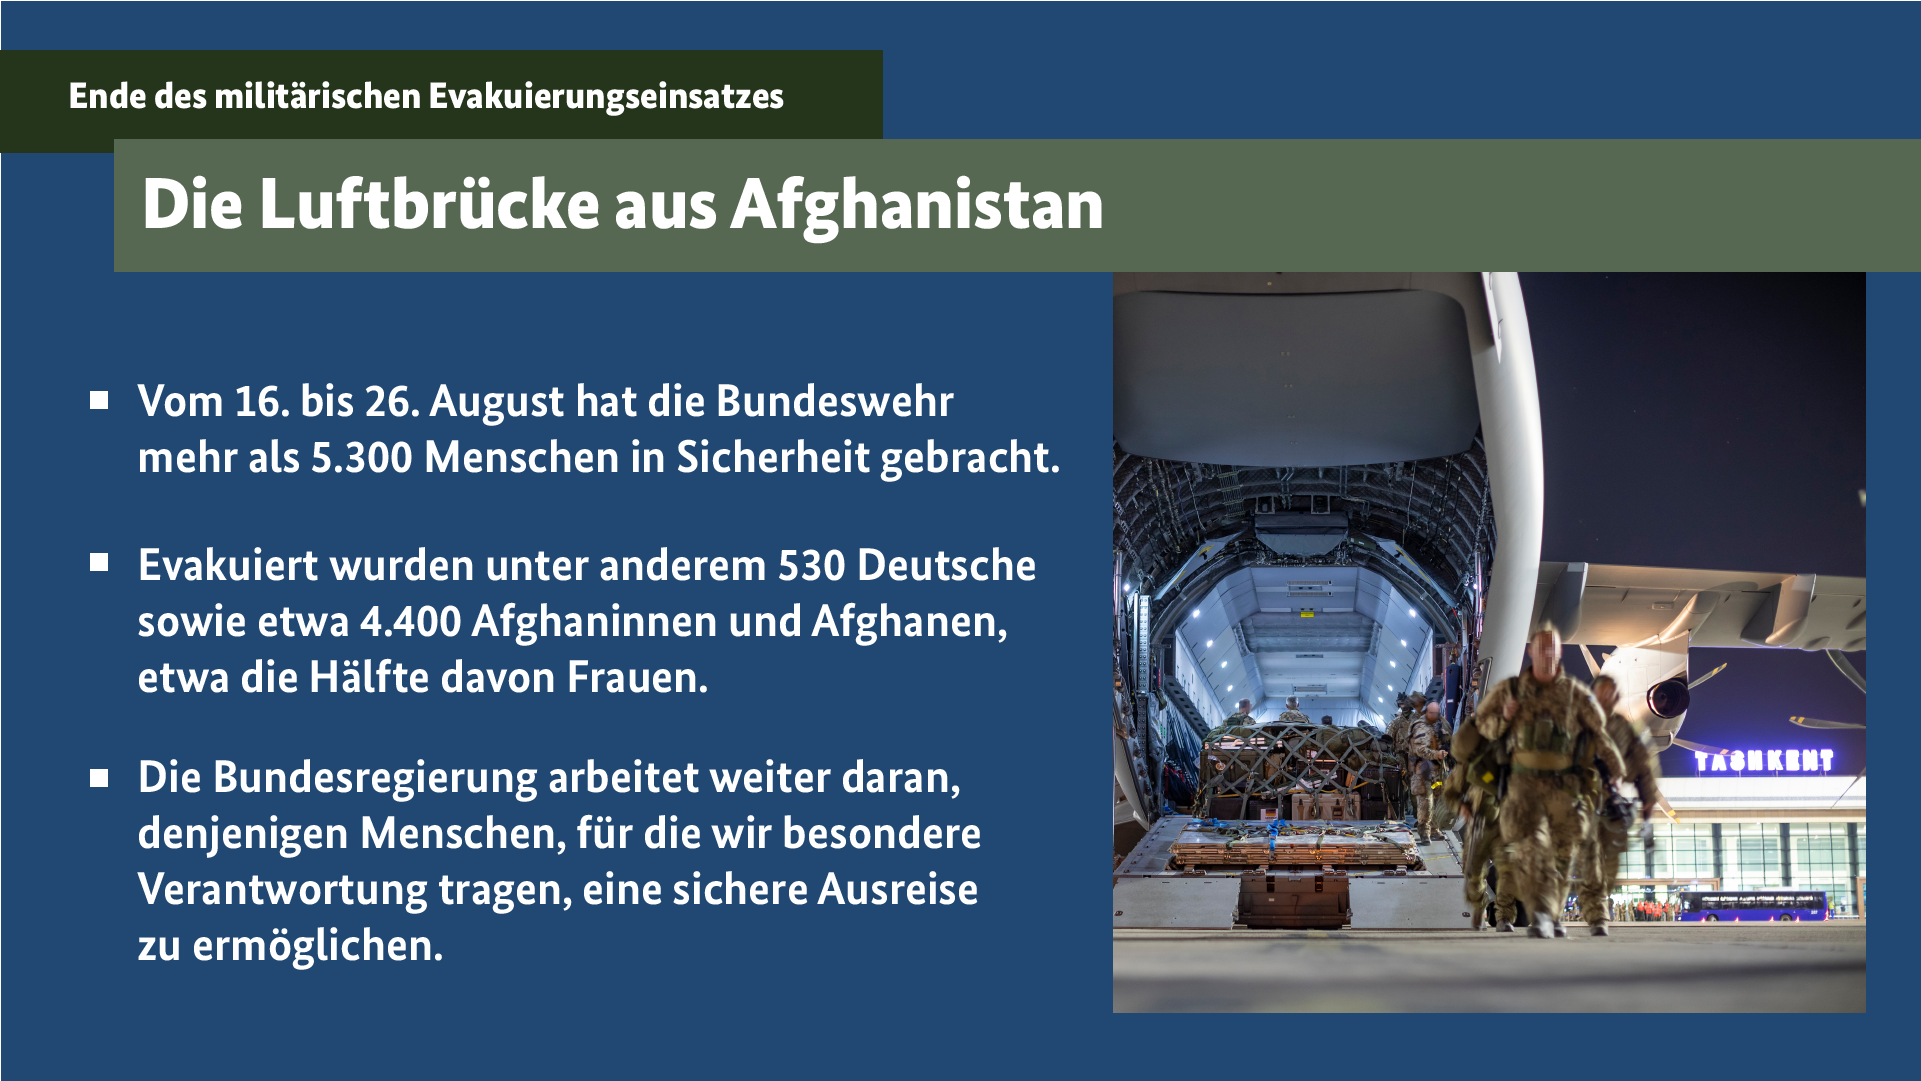 Die Grafik trägt den Titel Die Luftbrücke aus Afghanistan (Weitere Beschreibung unterhalb des Bildes ausklappbar als "ausführliche Beschreibung")